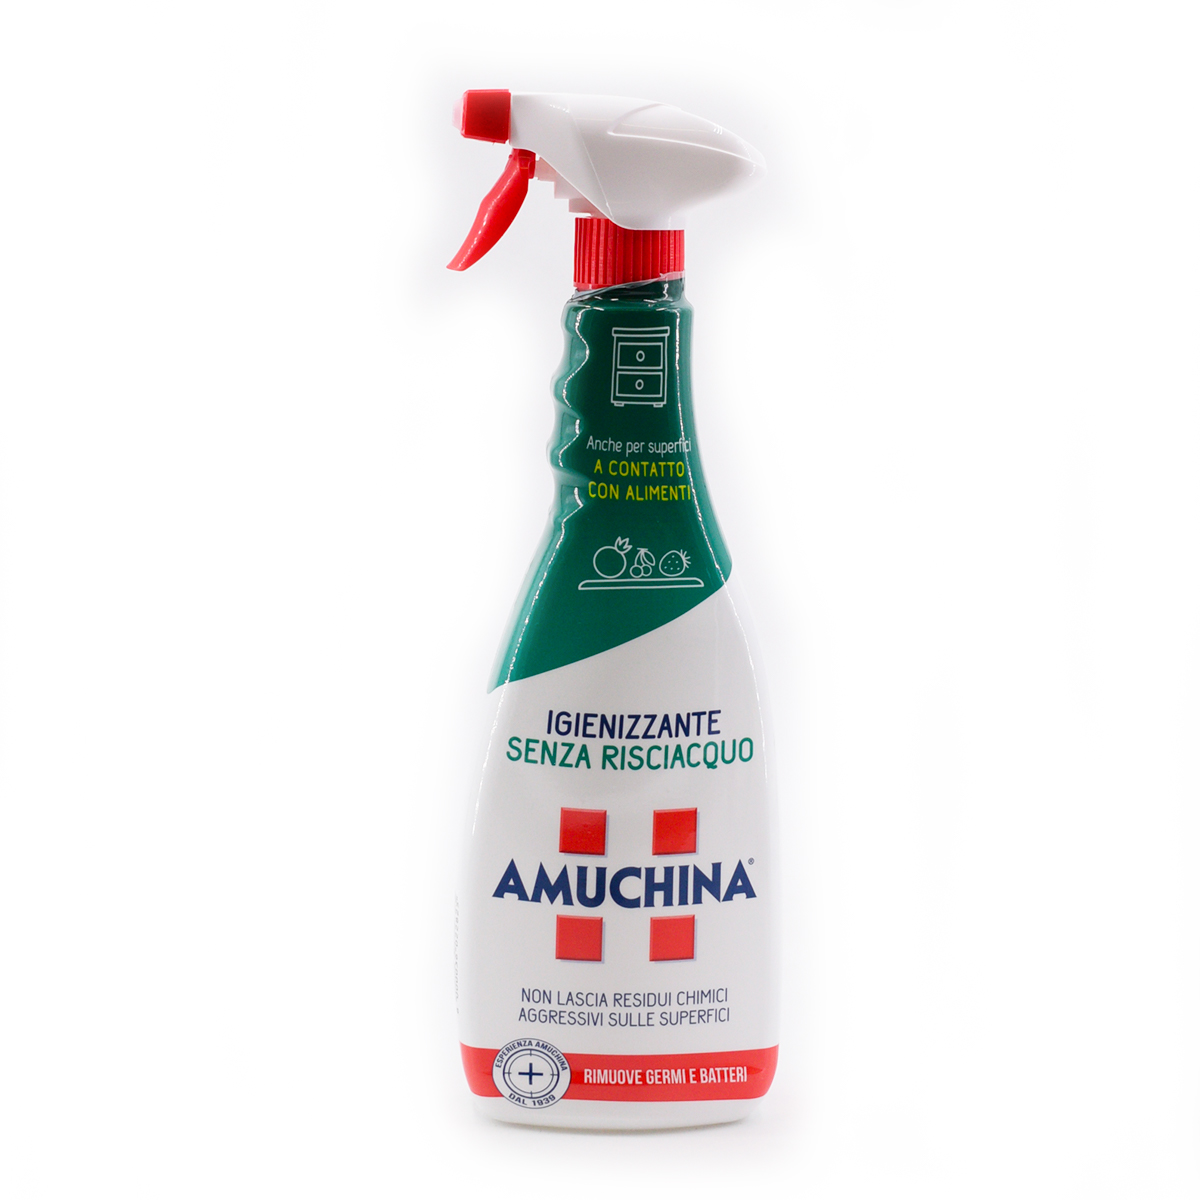 Amuchina Igienizzante senza risciacquo 750 ml